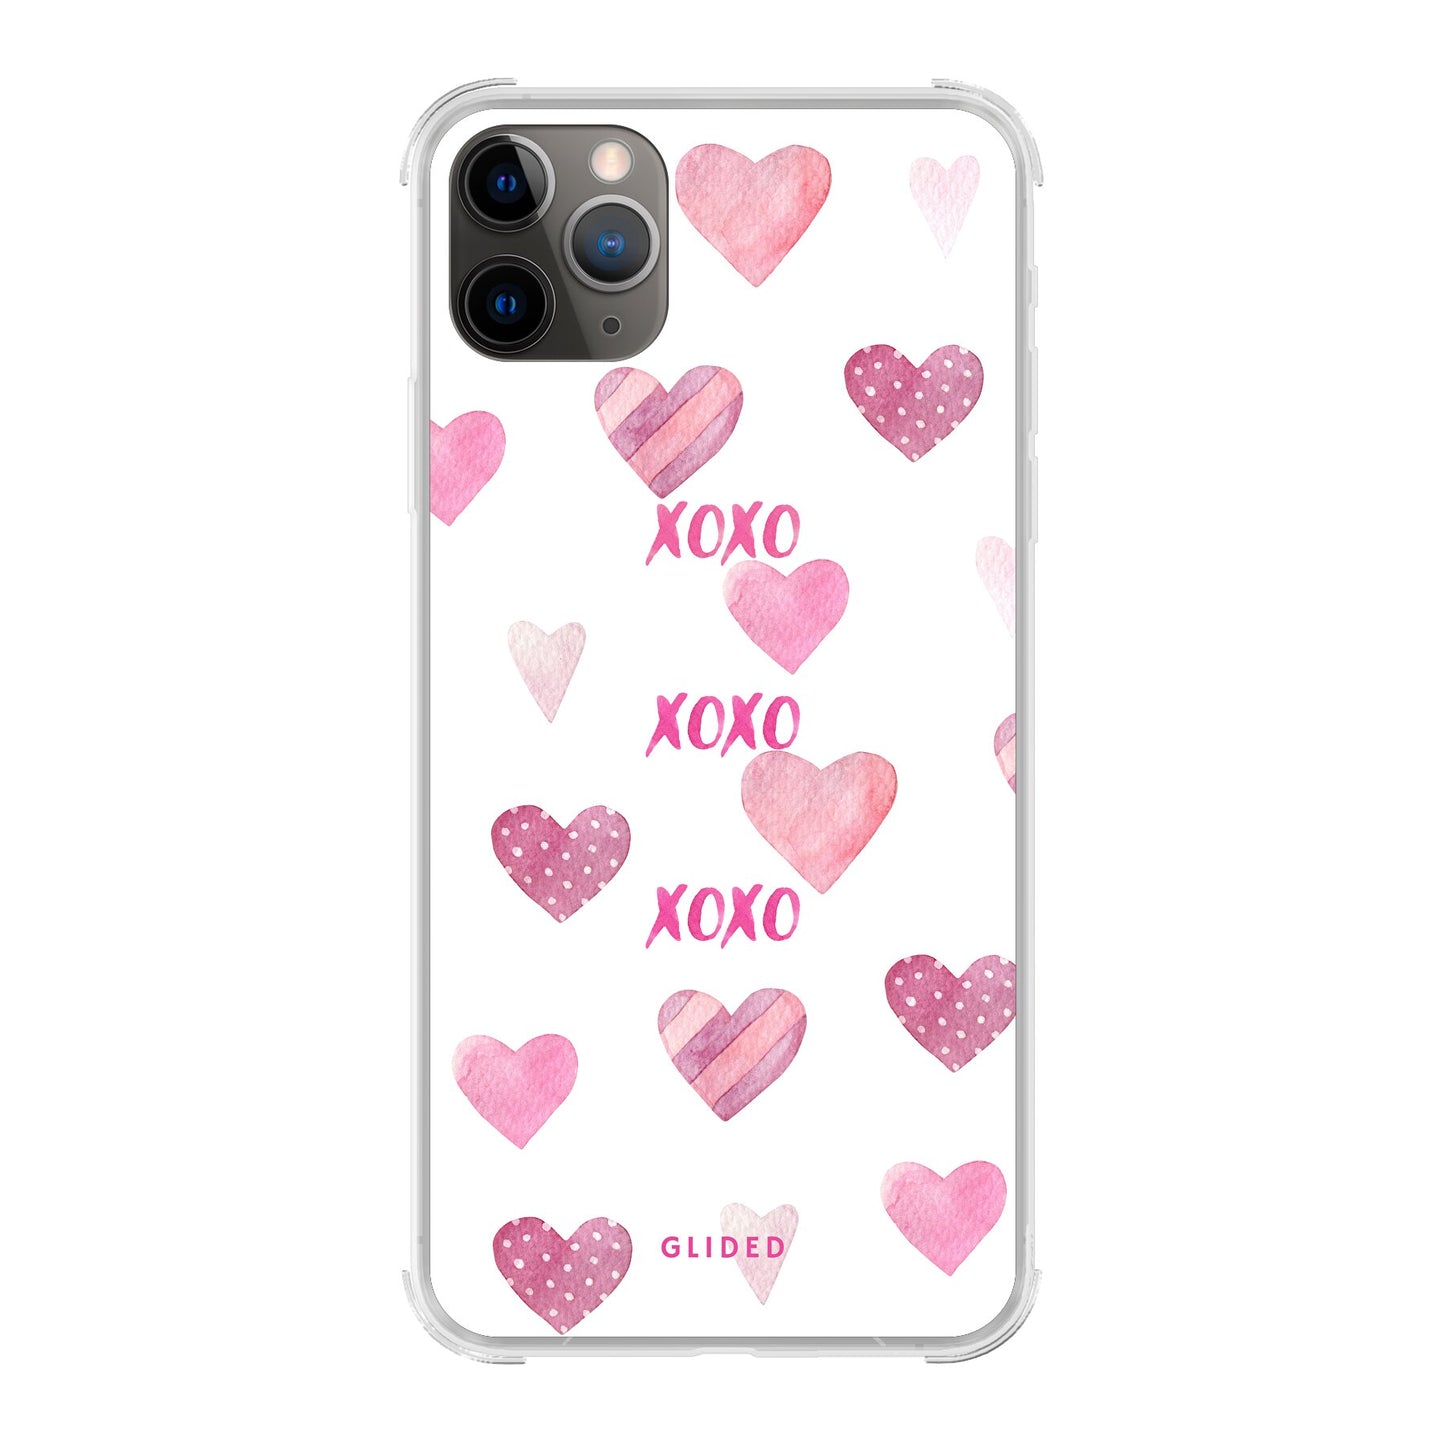 Xoxo - iPhone 11 Pro Max - Bumper case